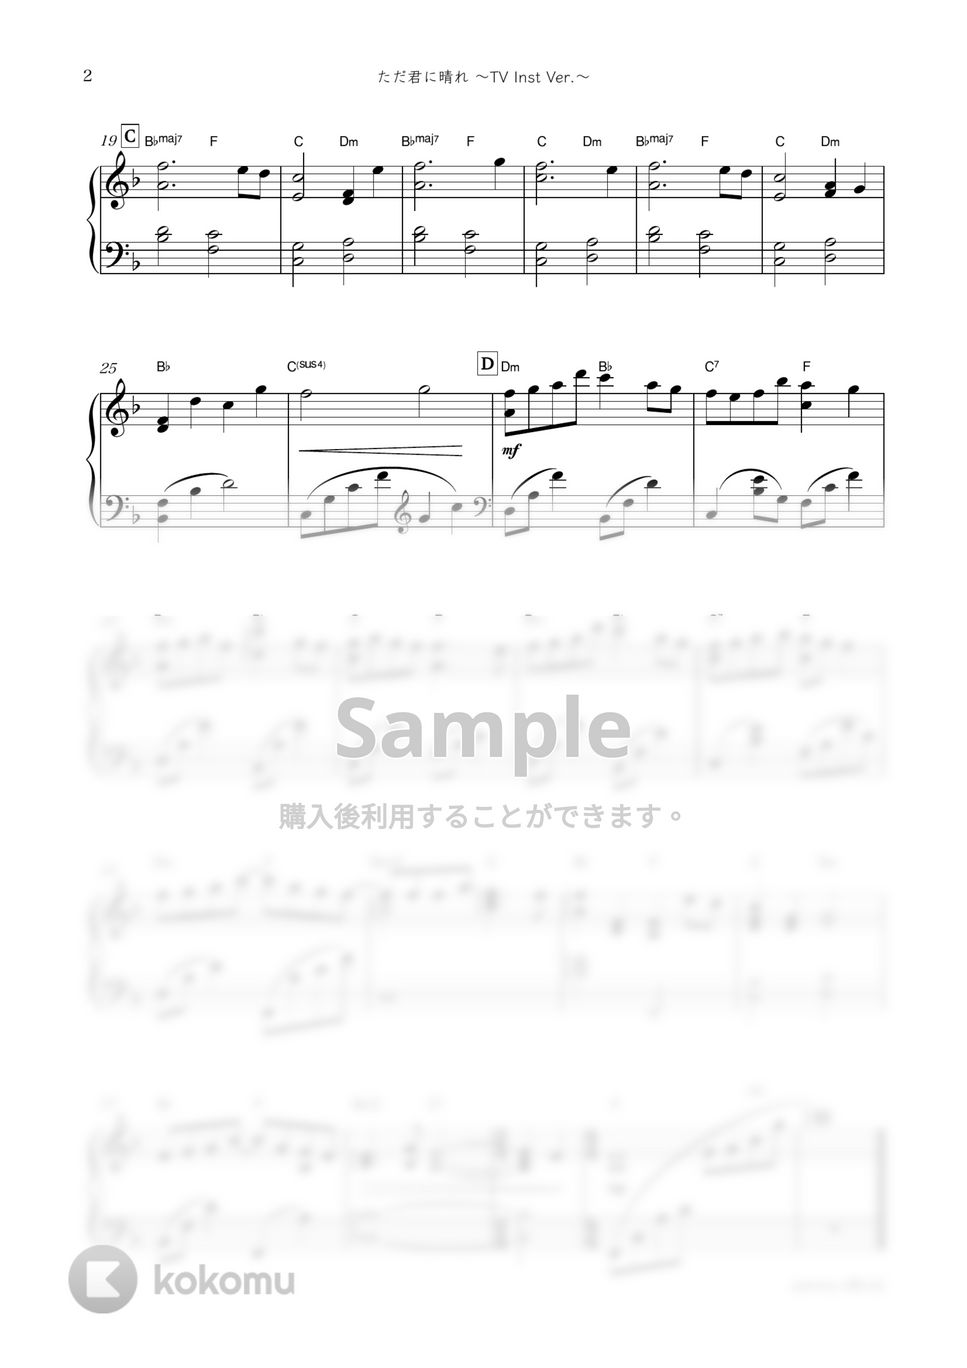 ヨルシカ・ドラマ『夕暮れに、手をつなぐ』OST - ただ君に晴れ (ドラマで流れた Inst ver.) by sammy